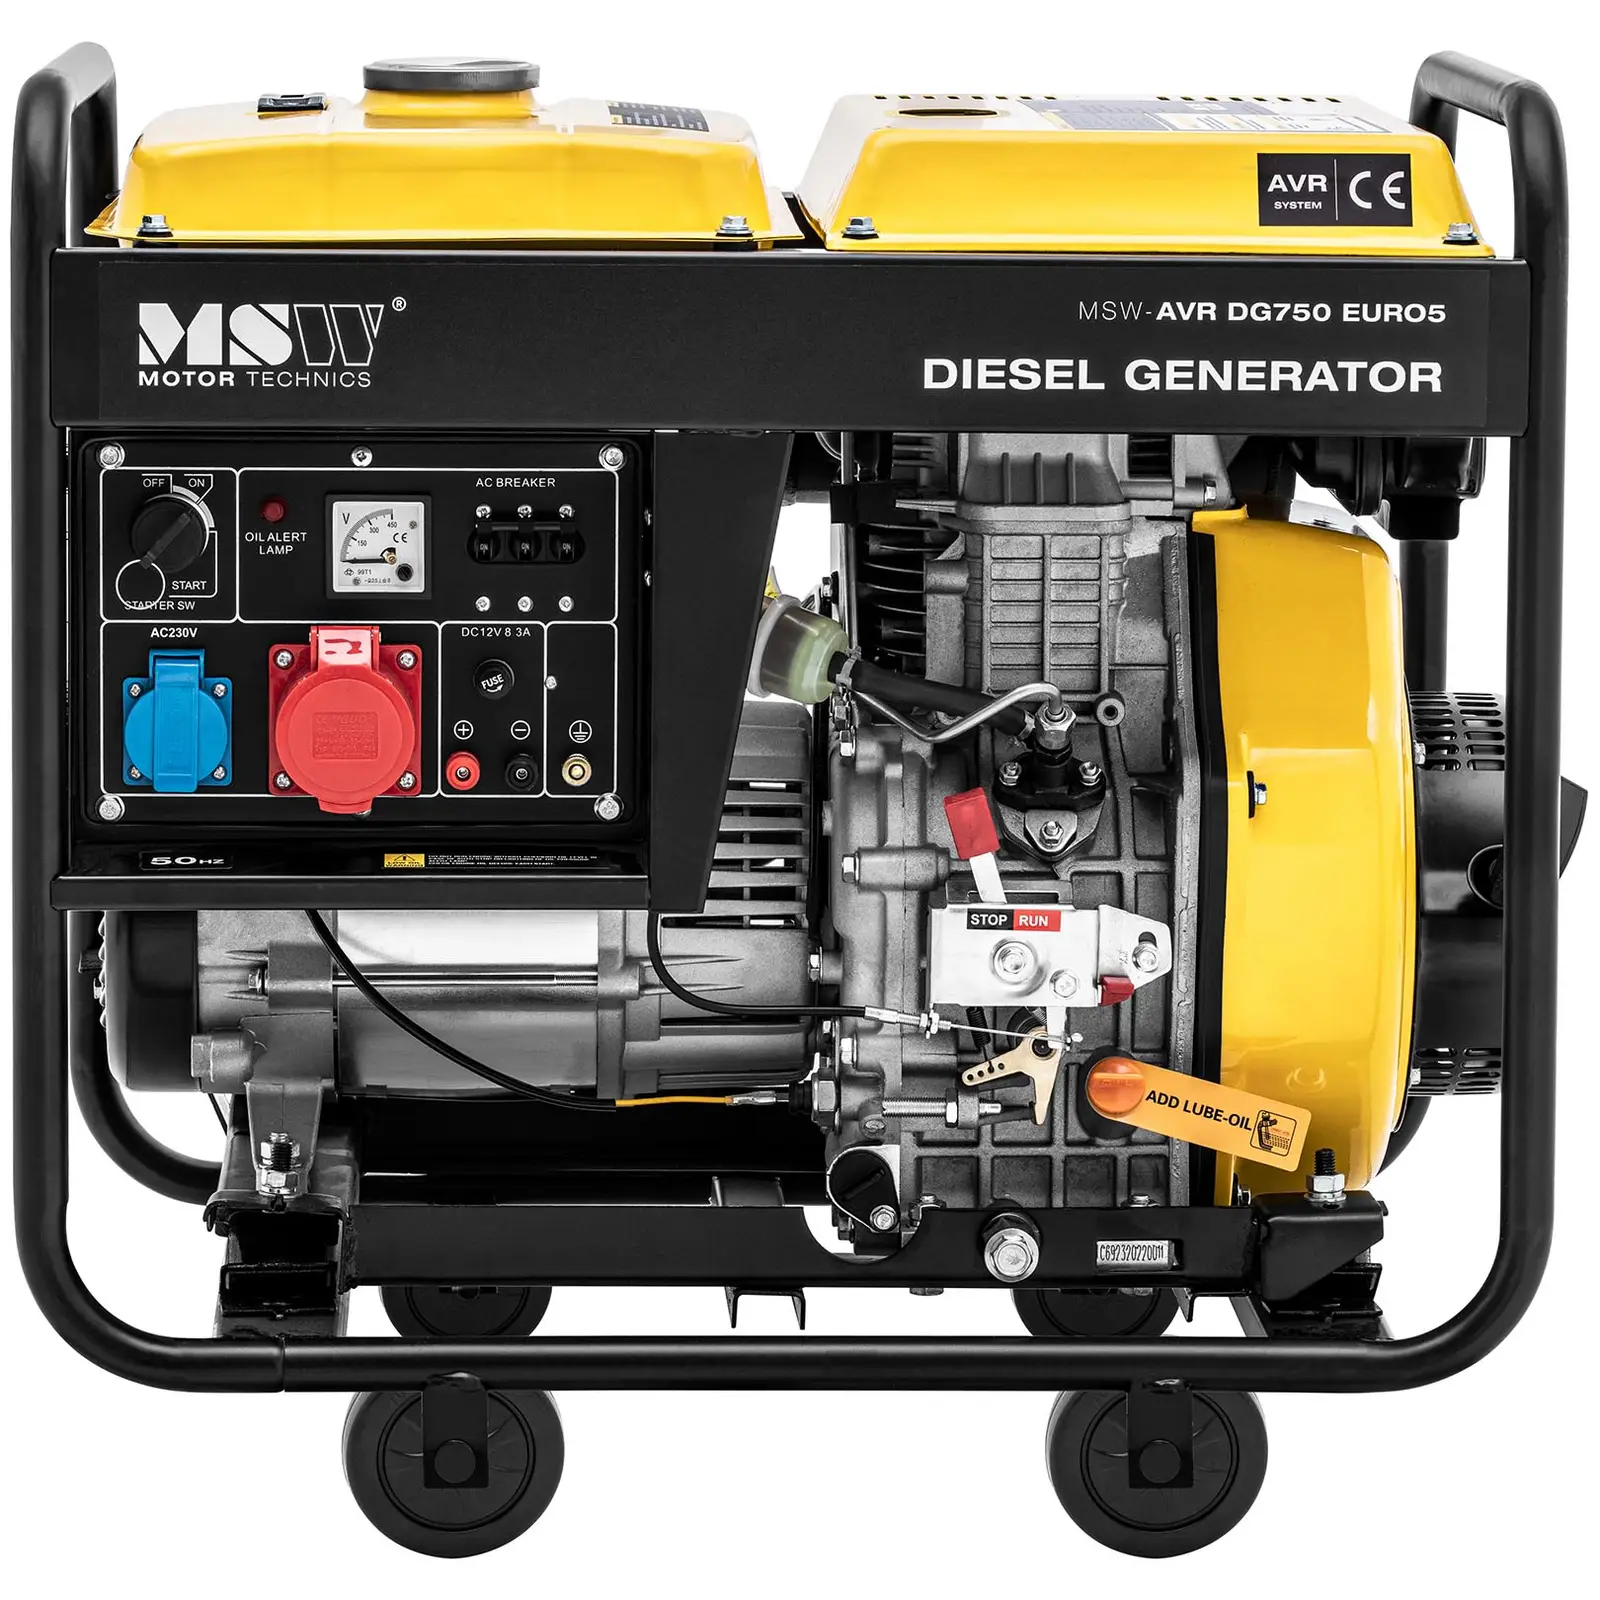 Diesel Generator - 1650 / 4600 W - 12.5 L - 230/400 V - mobile - AVR - Euro 5